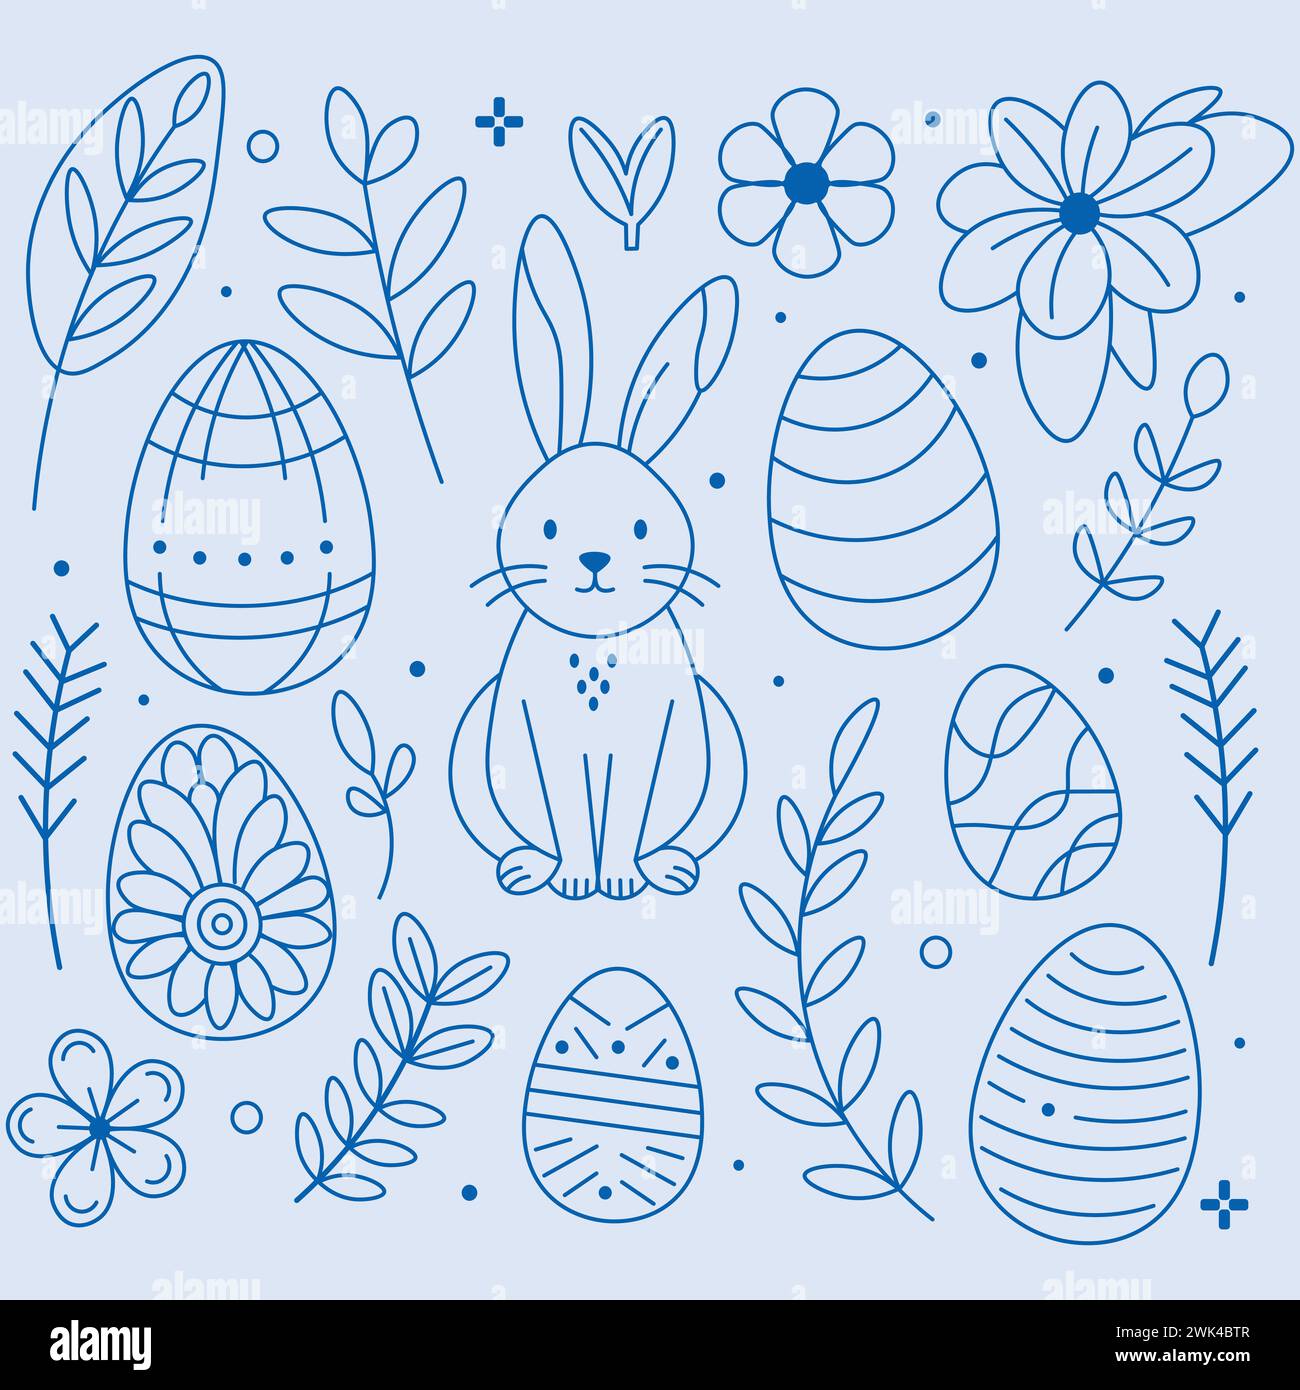 Handillustriertes Set bestehend aus niedlichen Kaninchen, dekorierten Ostereiern und einer Auswahl von Blumen und Blättern, alle in einem beruhigenden grünen Hauch dargestellt Stock Vektor